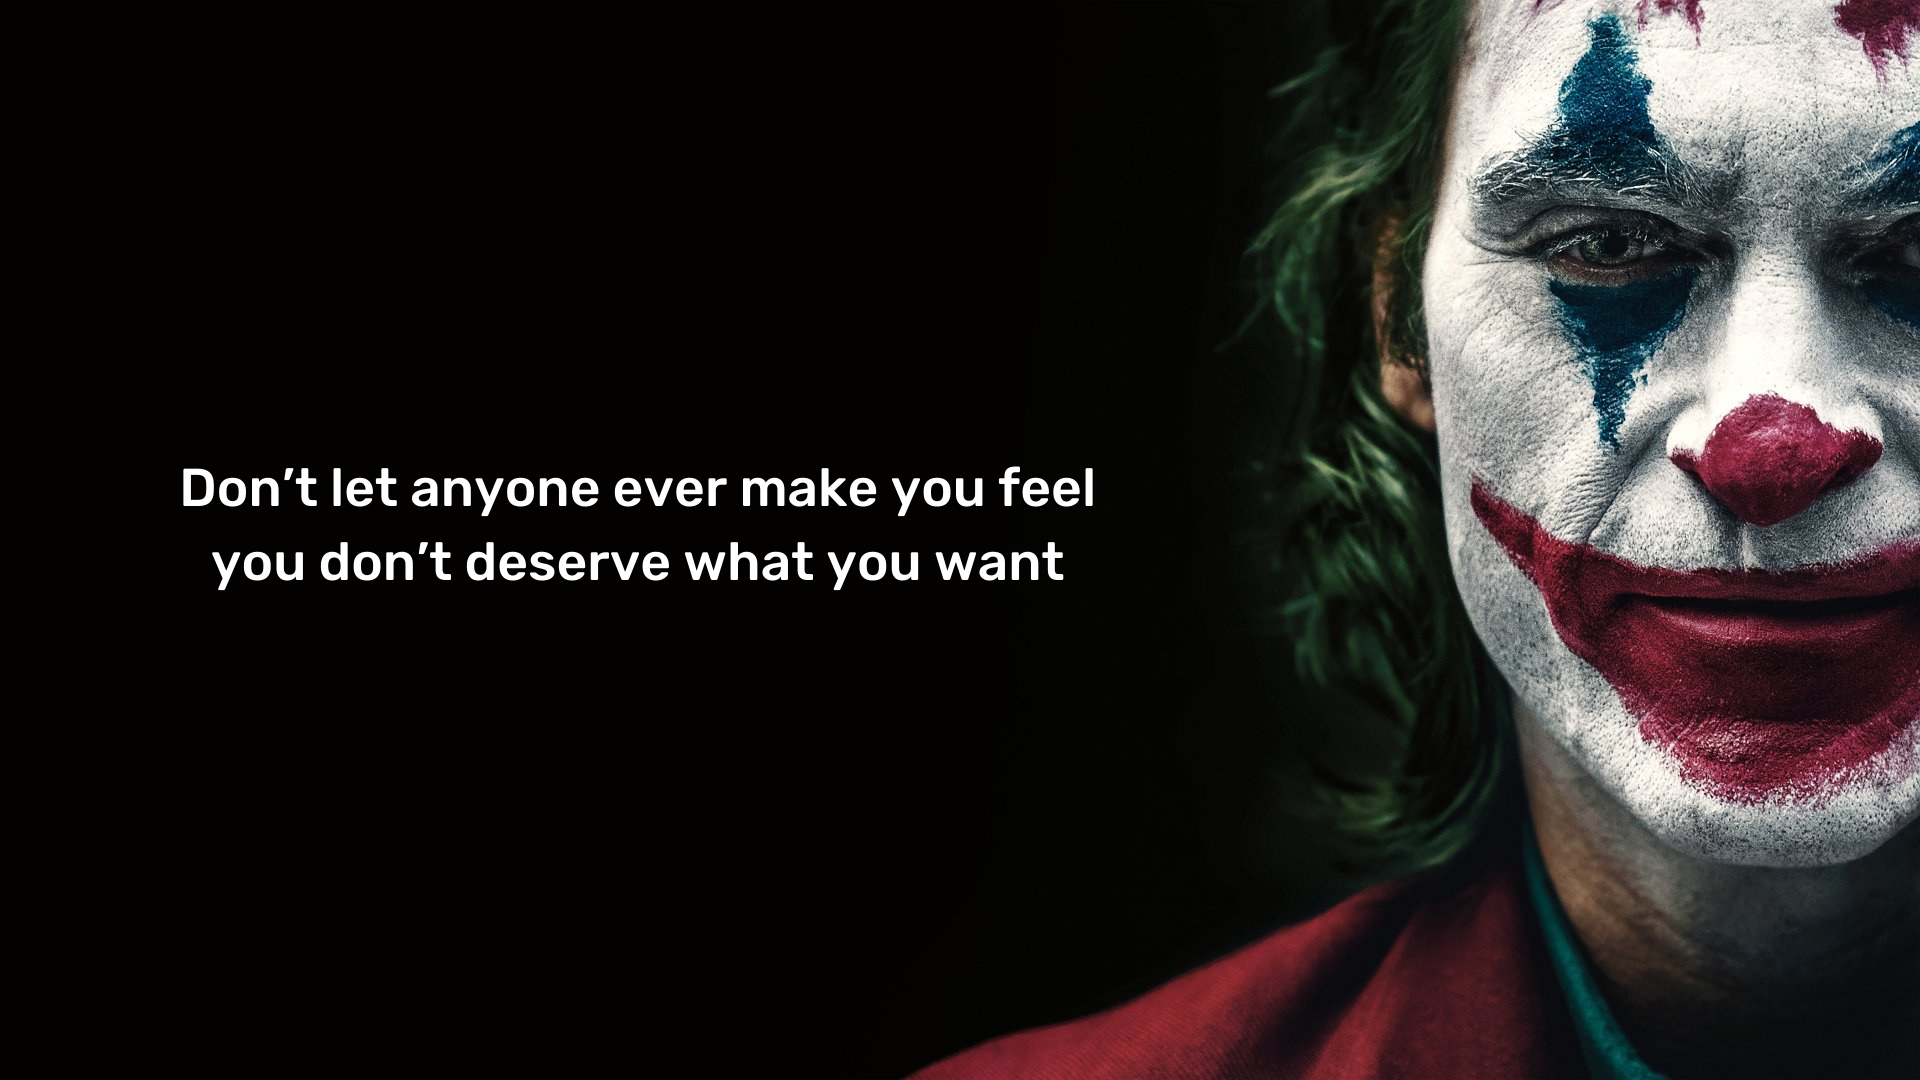 Wallpaper. Joker. Quotes. Movie Quotes. Joker quotes, Movie quotes, Real quotes